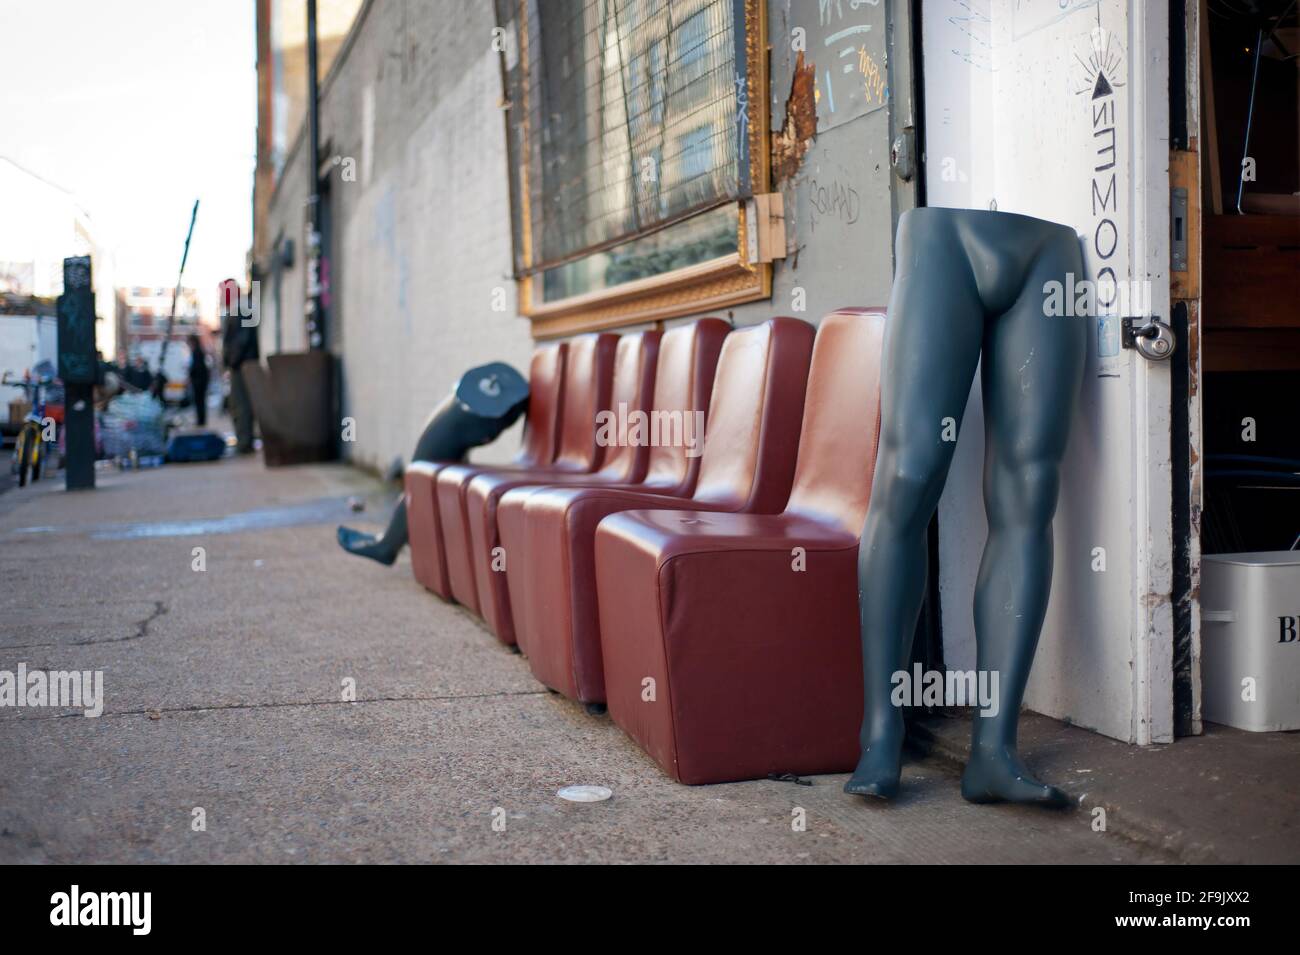 Tome asiento. Medio cuerpo de maniquí esperando junto a la puerta. Escena divertida de un mercadillo dominical alrededor de Brick Lane, East London, Reino Unido. Ene 2013 Foto de stock